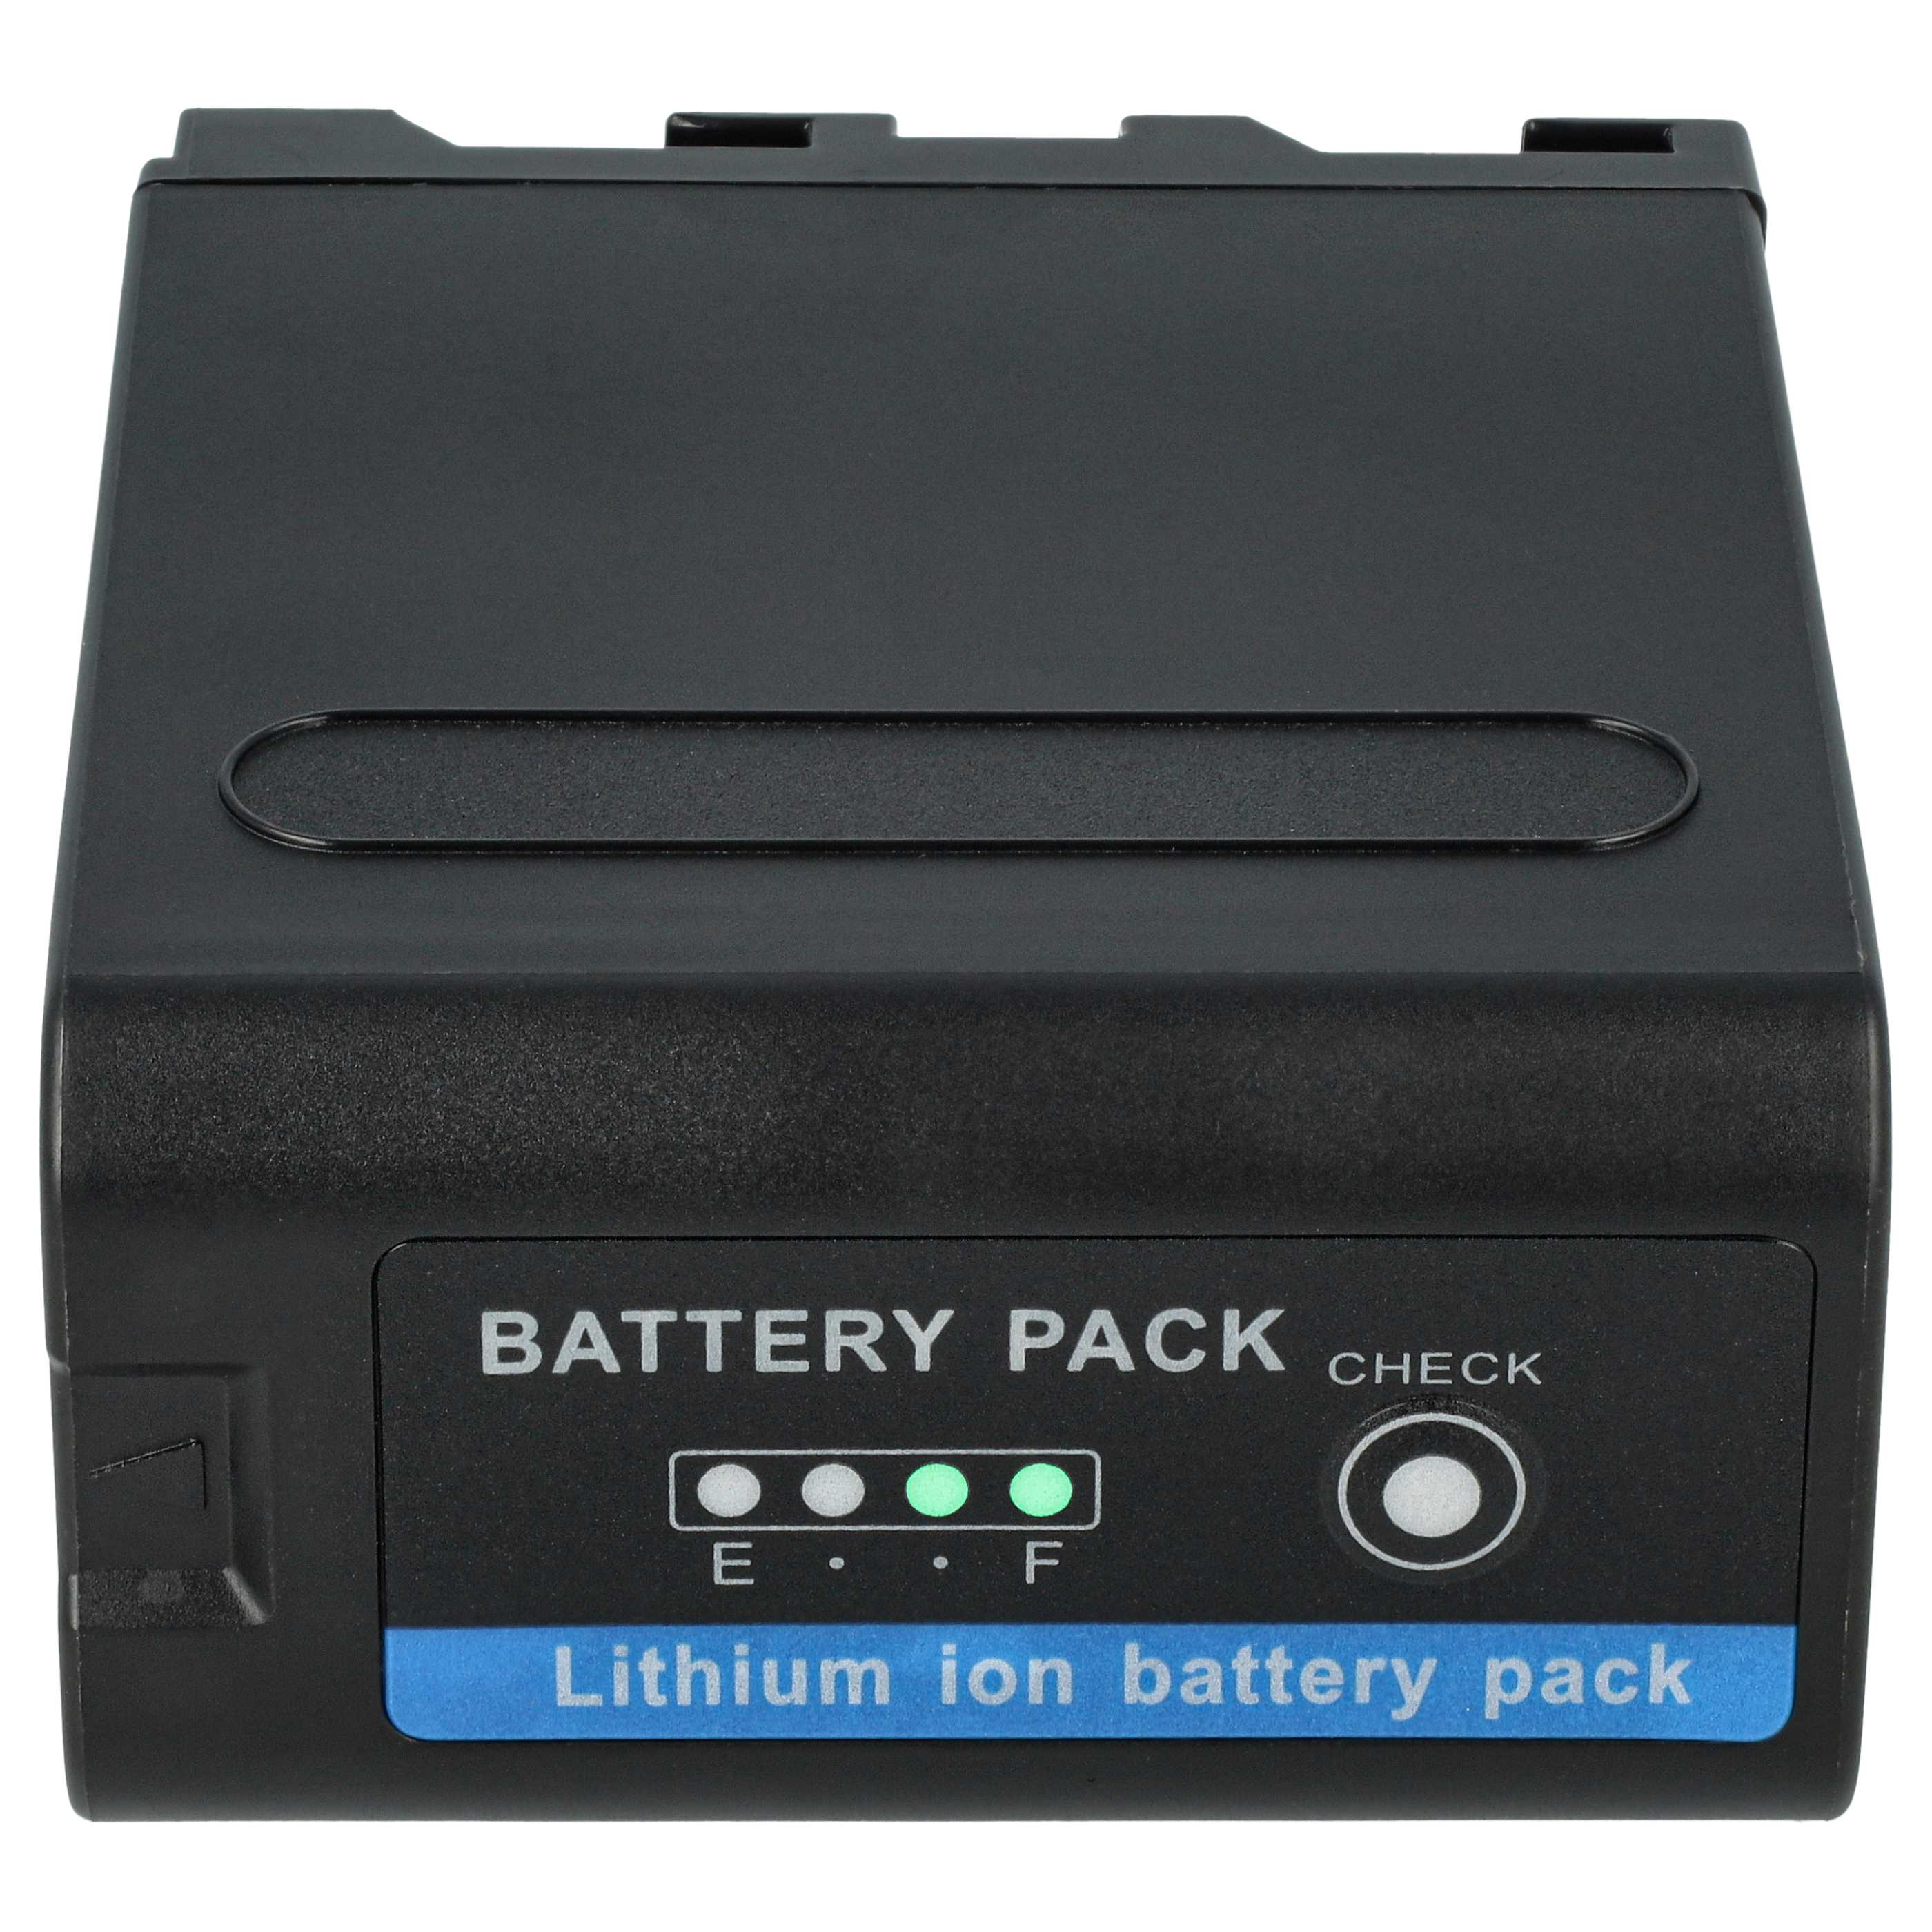 Batterie remplace Grundig BP-10, BP-9, BP-8 pour caméscope - 10400mAh 7,4V Li-ion